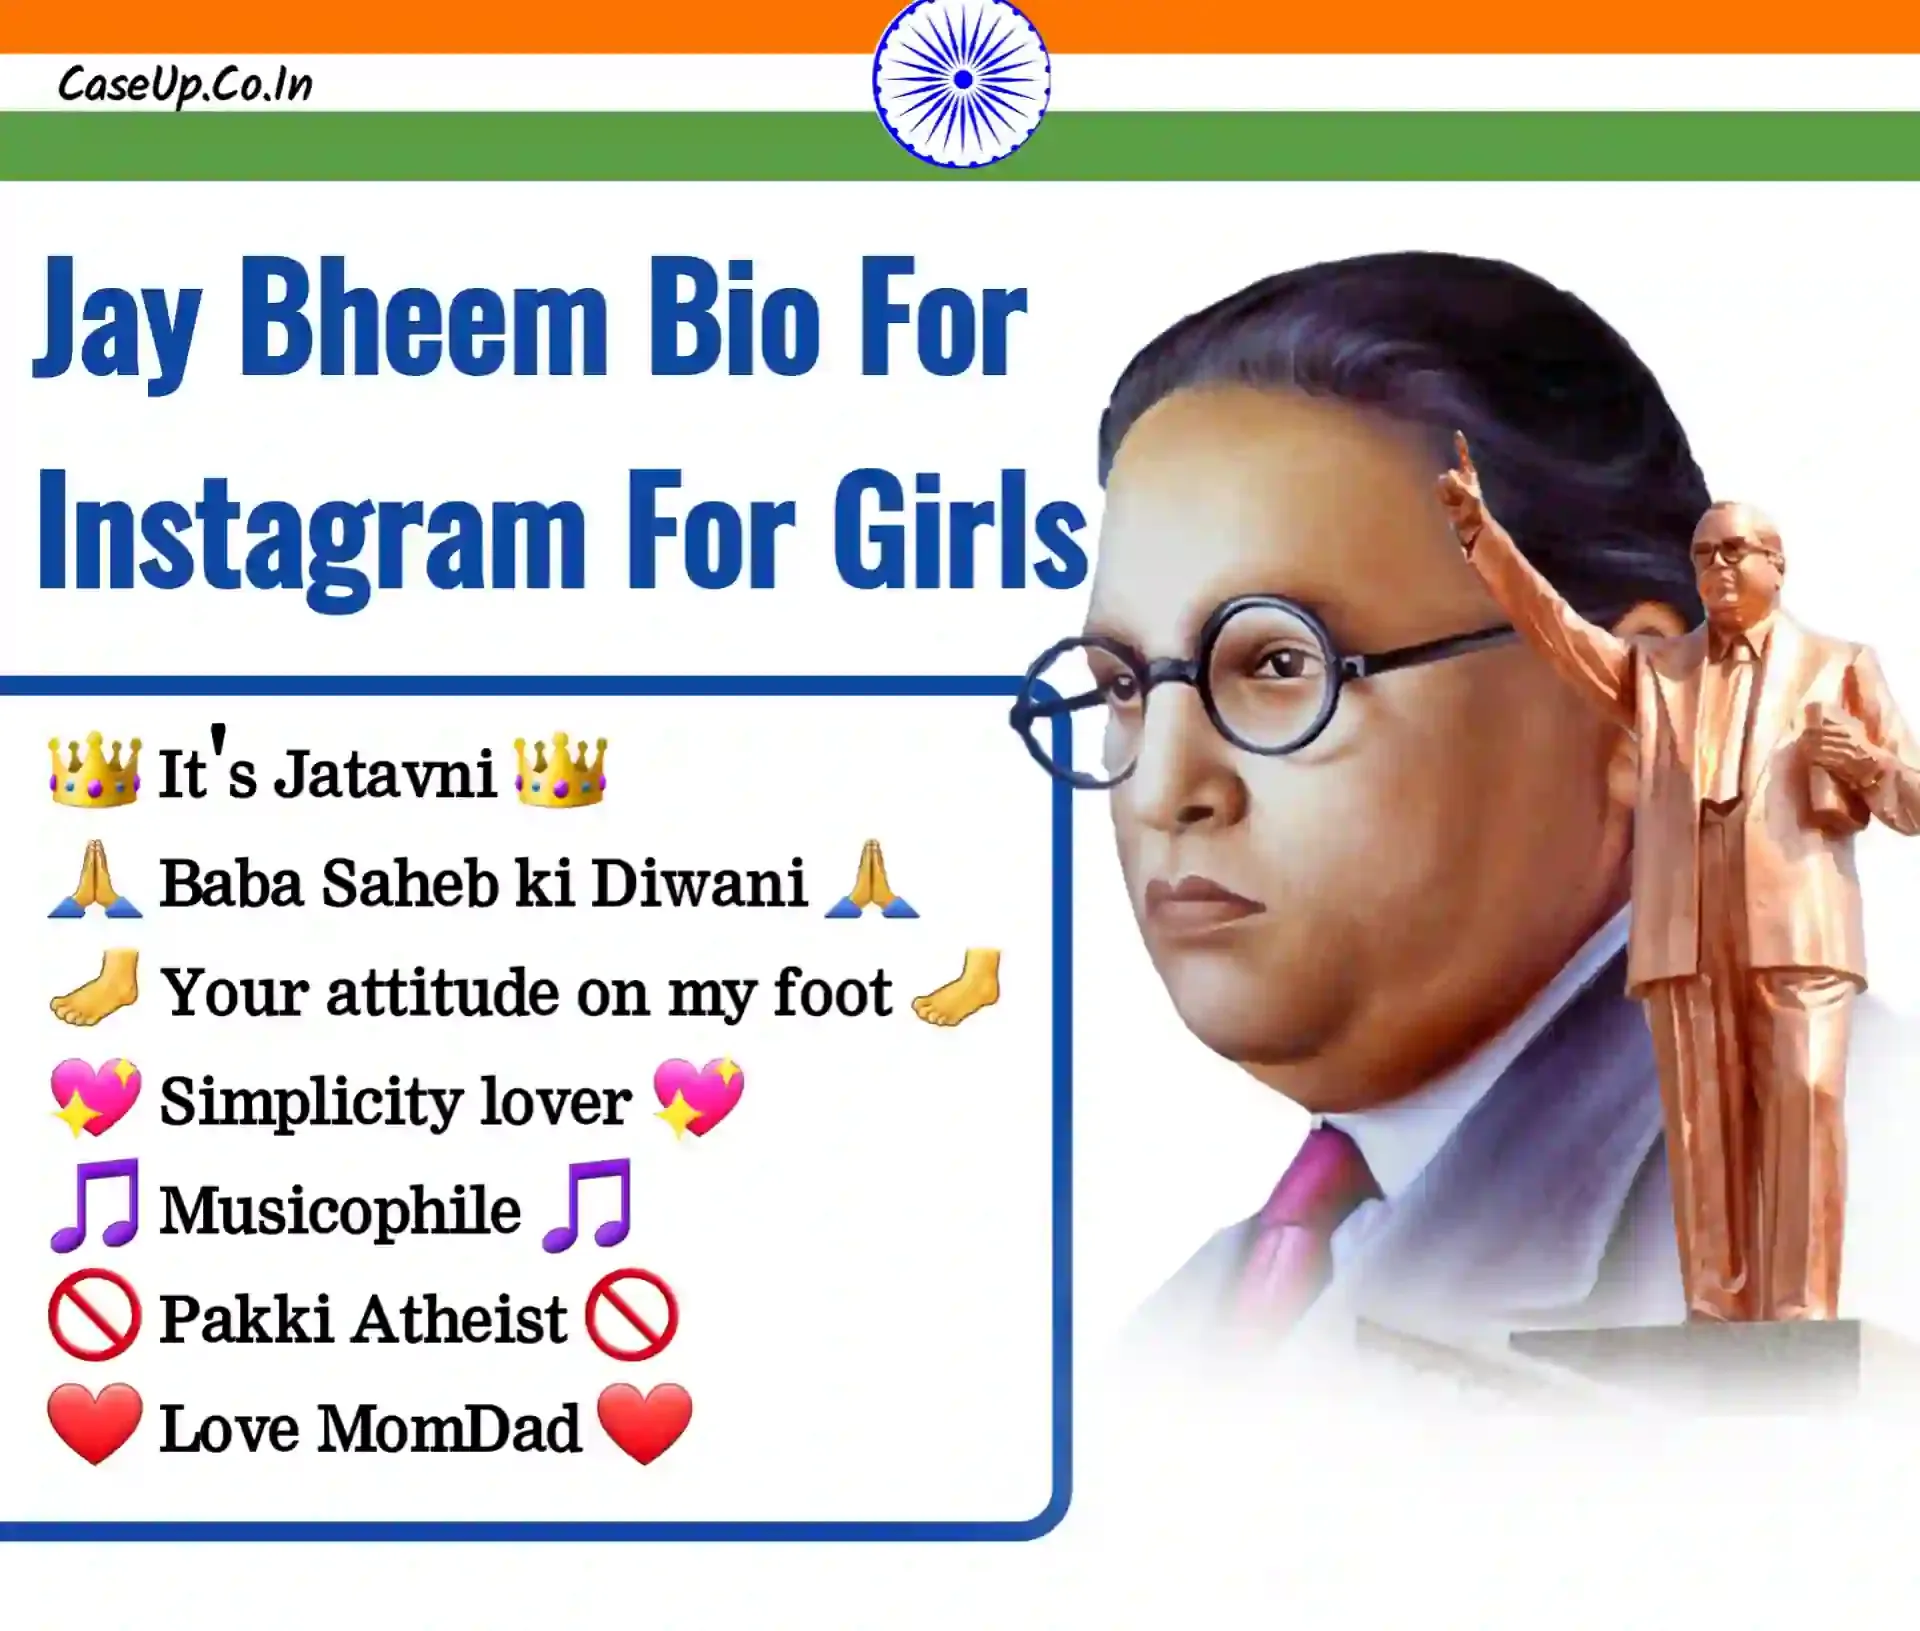 jai bheem bio for instagram for girls